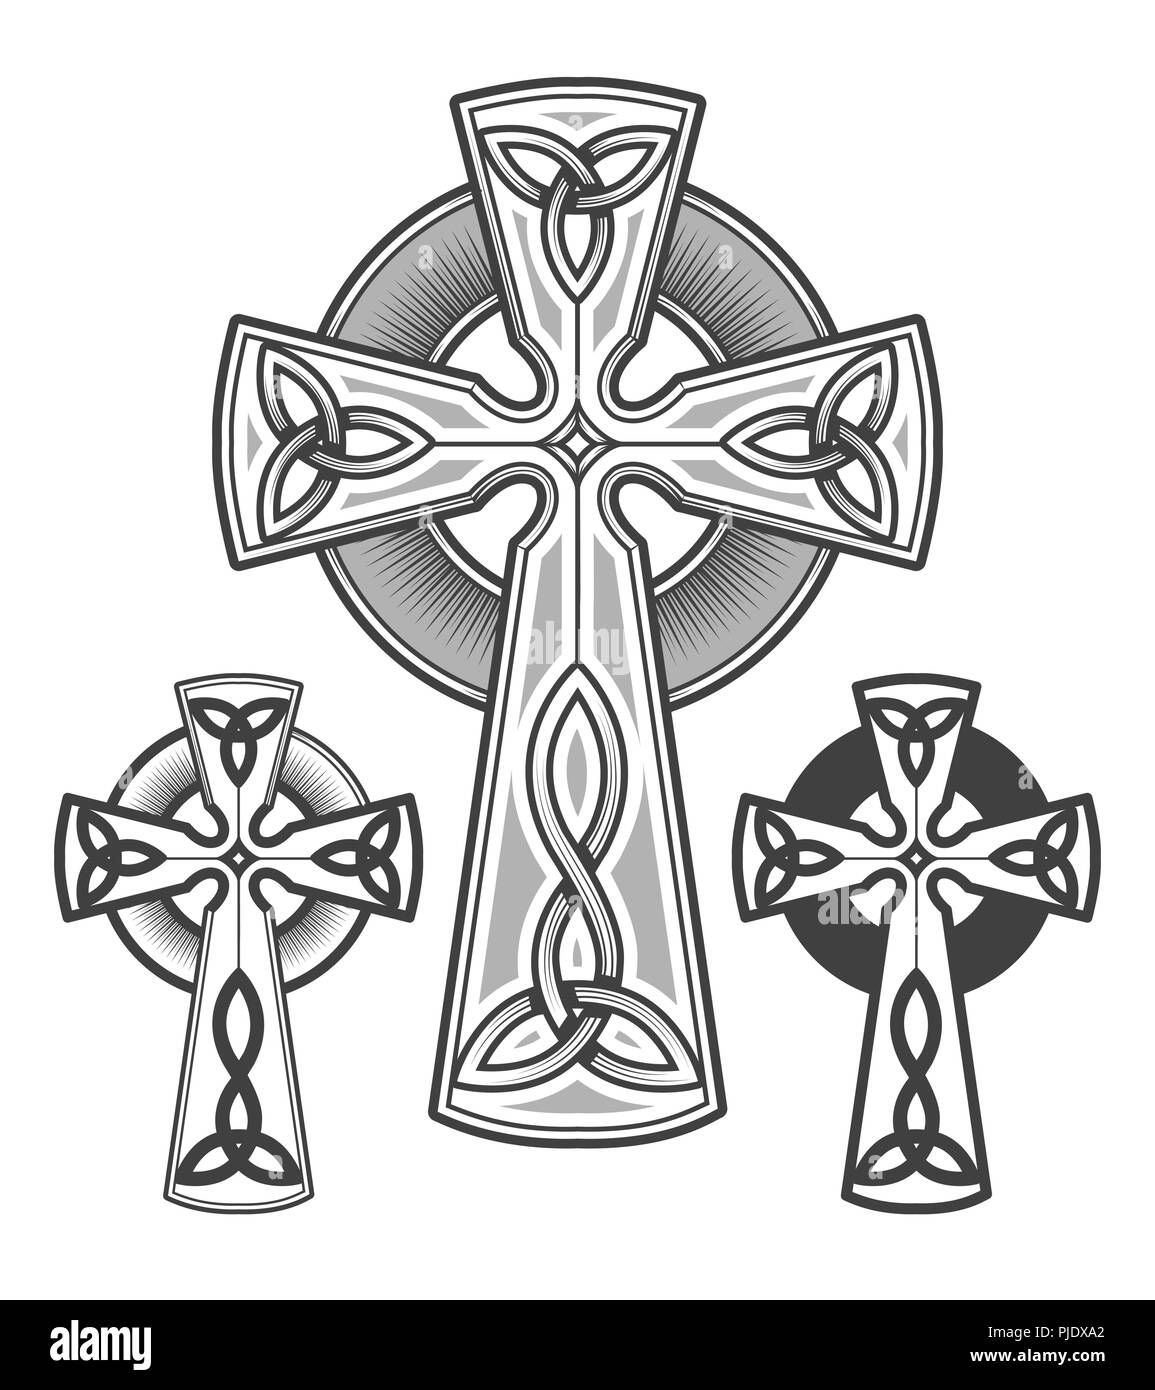 Celtic cross emblema disegnato in stile di incisione. Illustrazione Vettoriale. Illustrazione Vettoriale